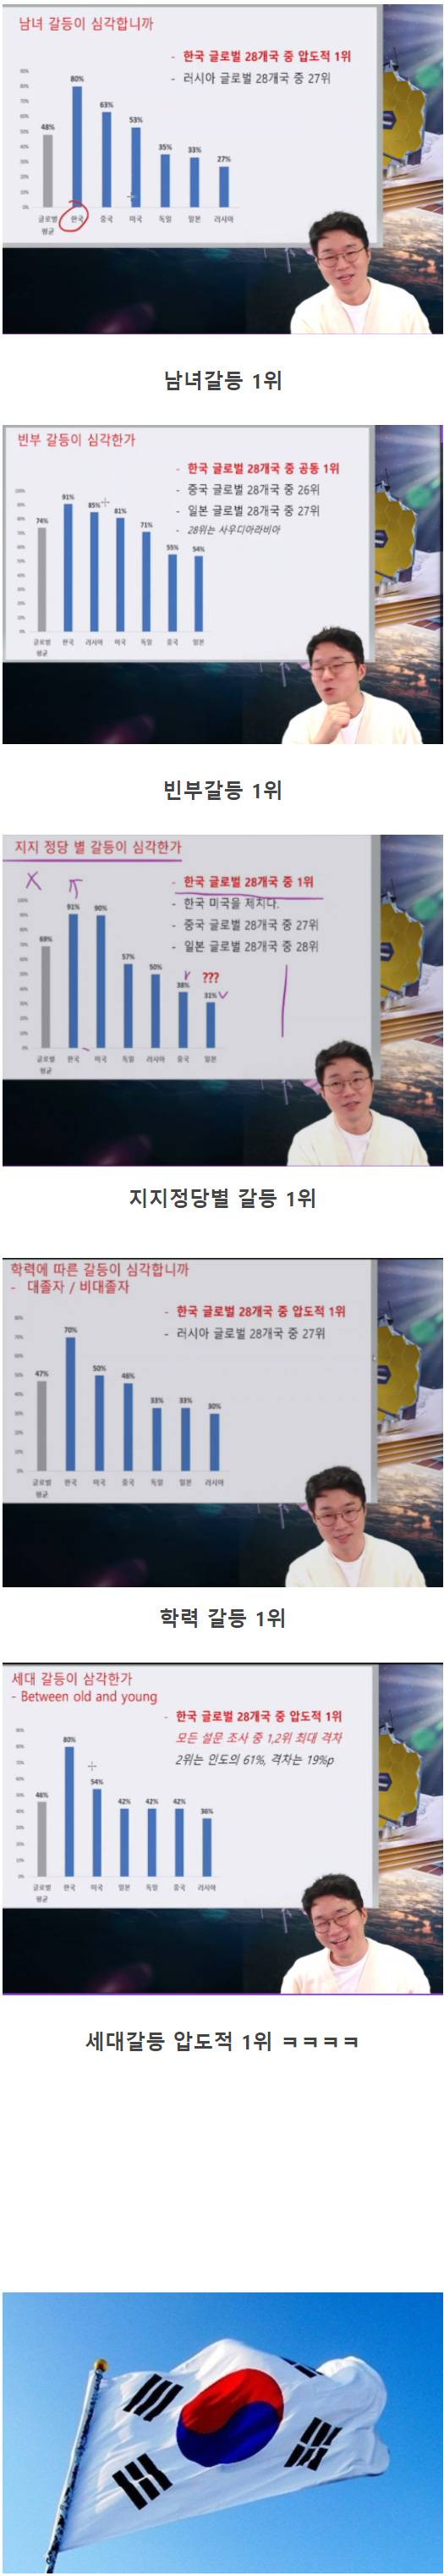 한국이 1등인 통계